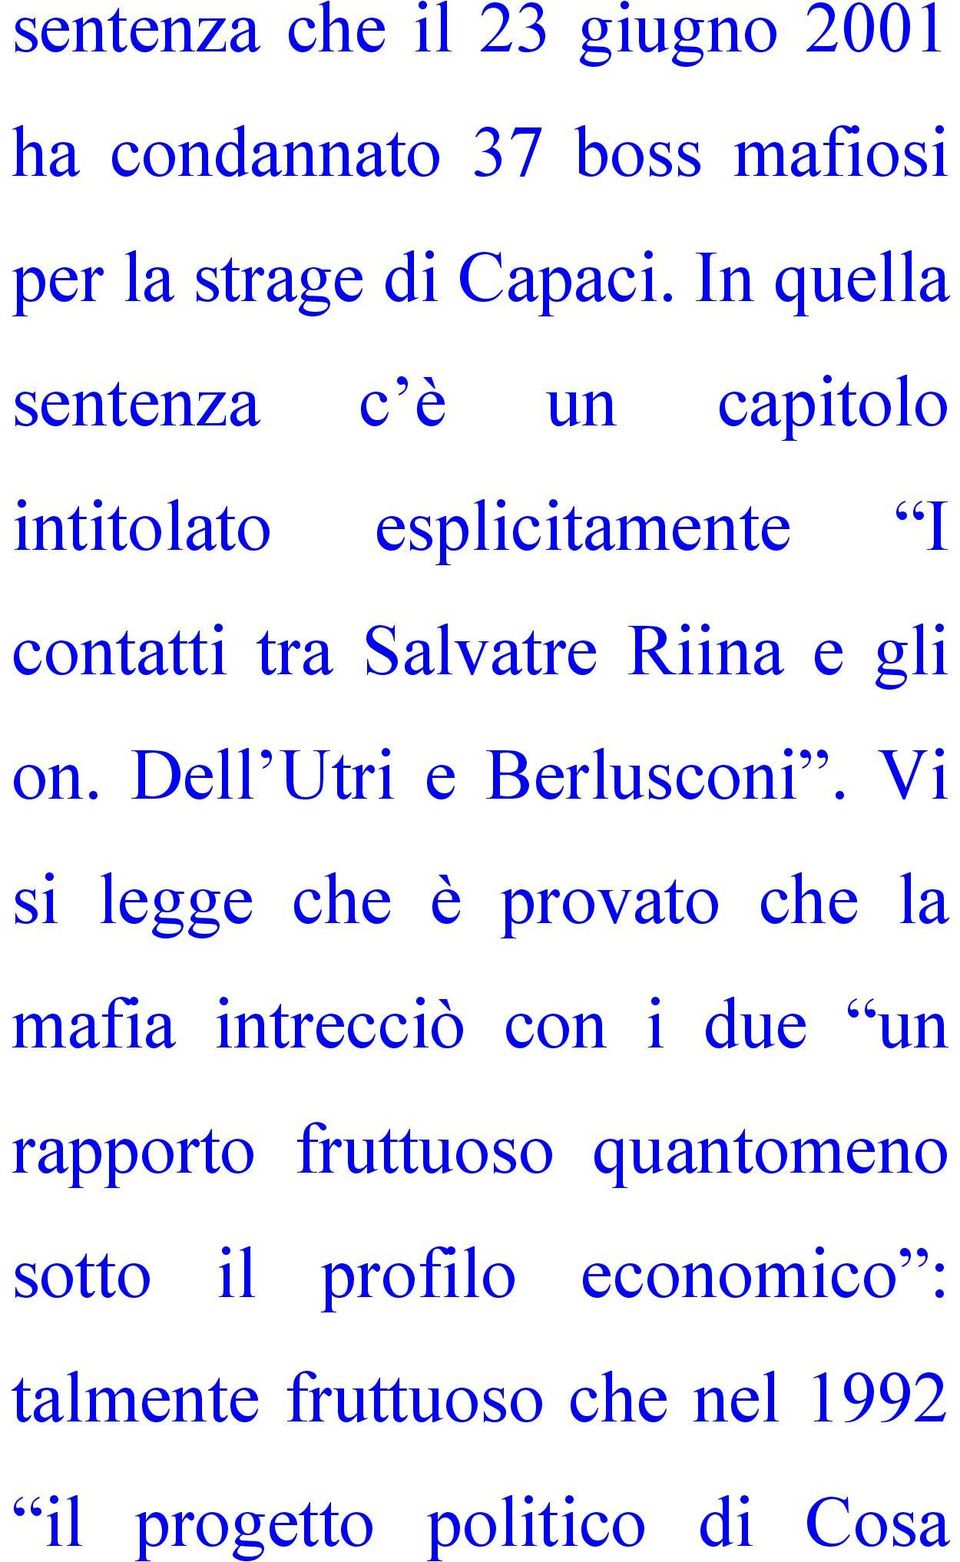 on. Dell Utri e Berlusconi.